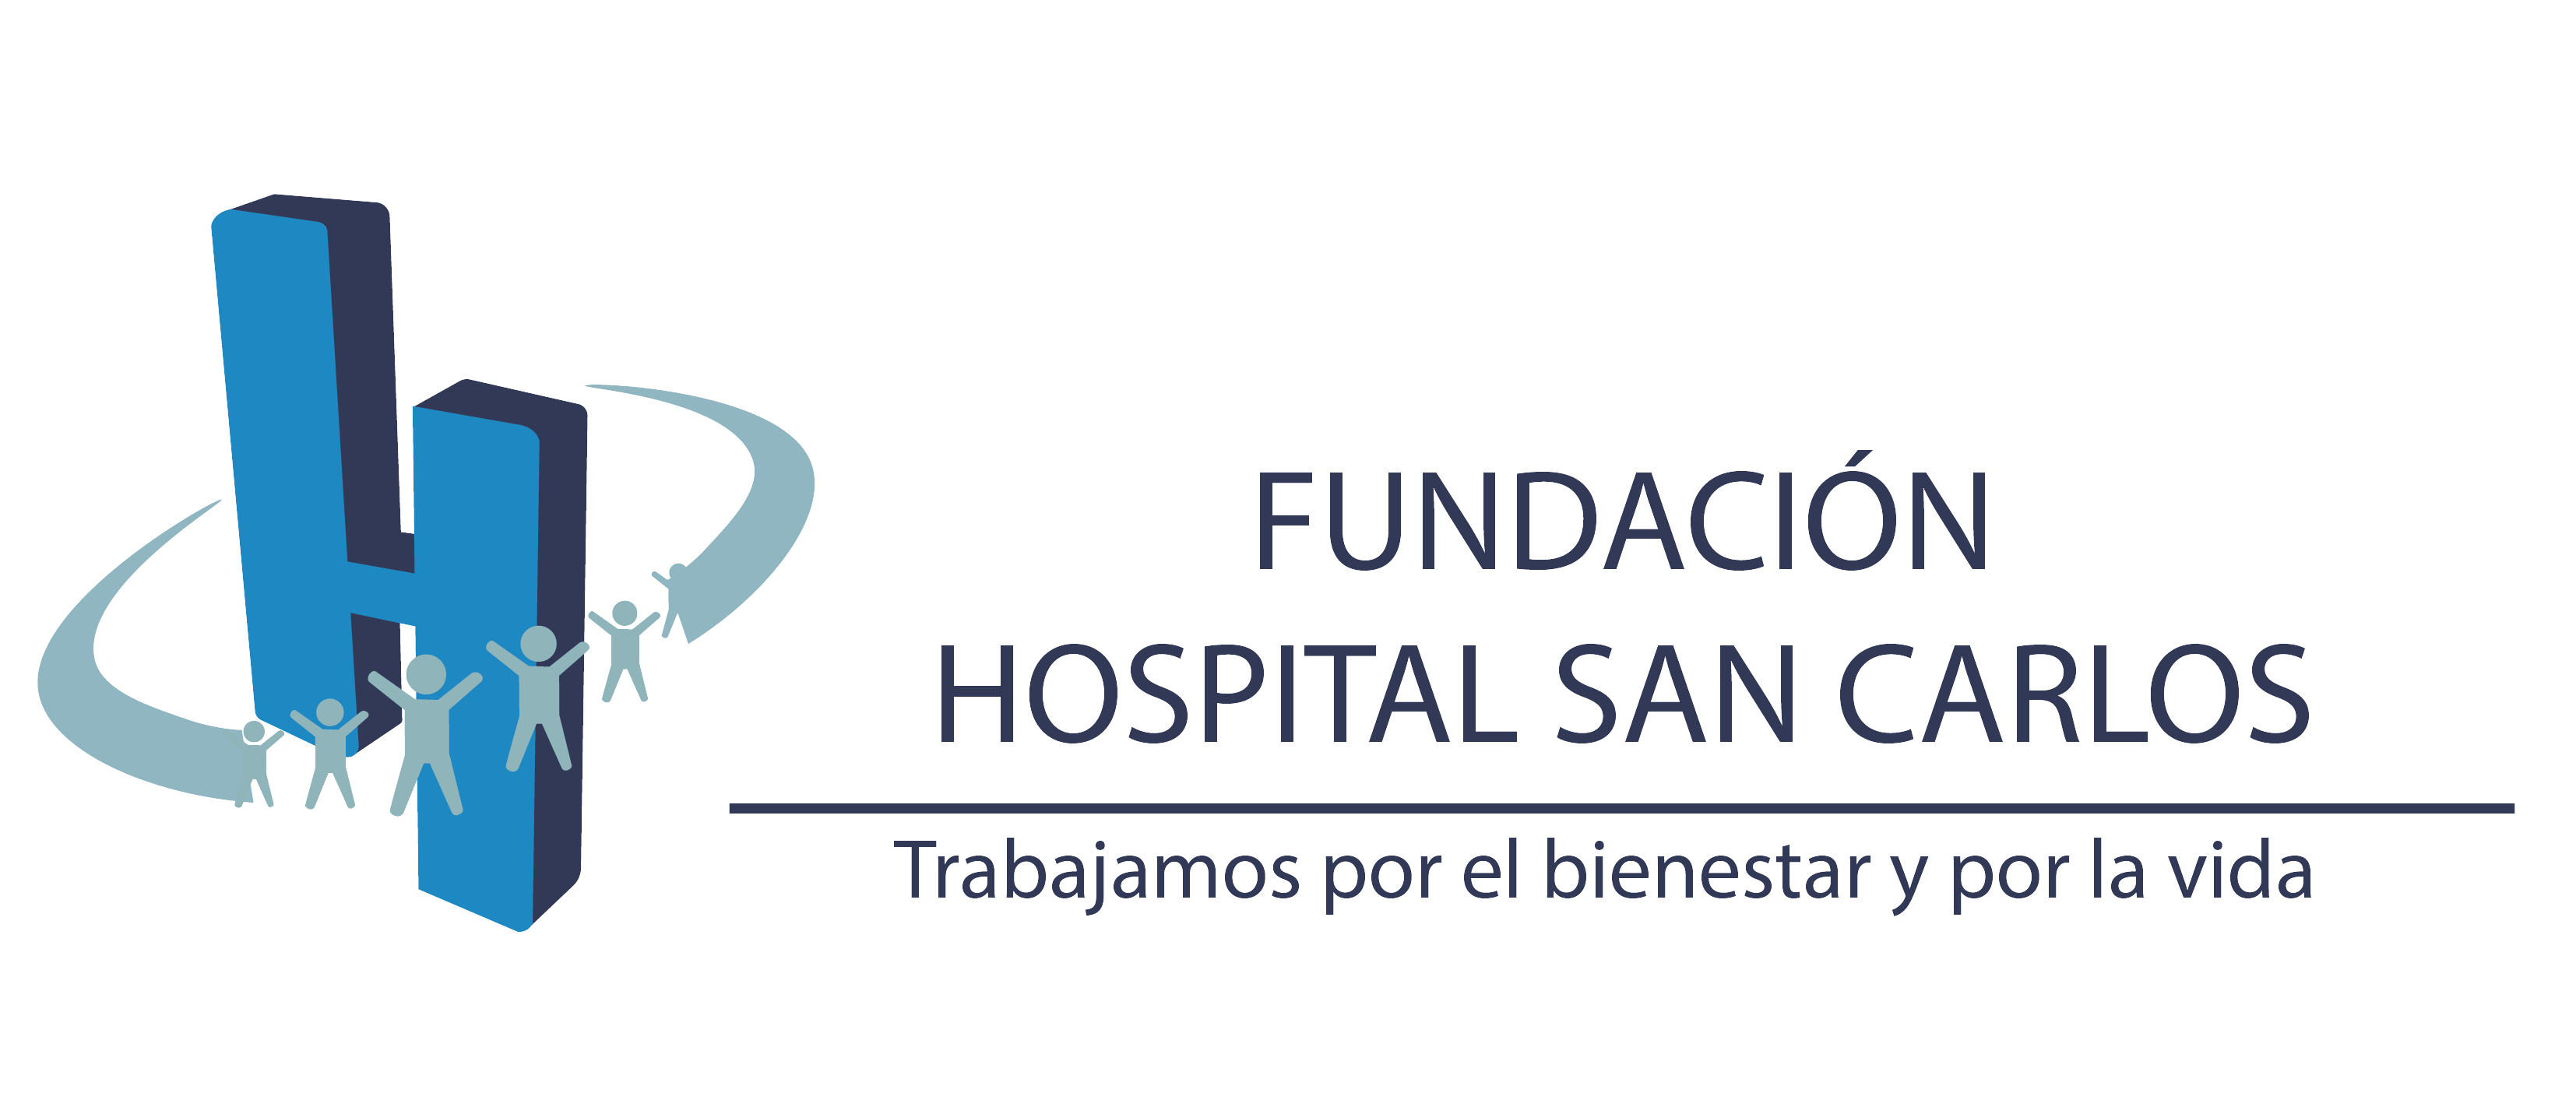 Fundación Hospital San Carlos – Trabajamos por el bienestar y por la vida